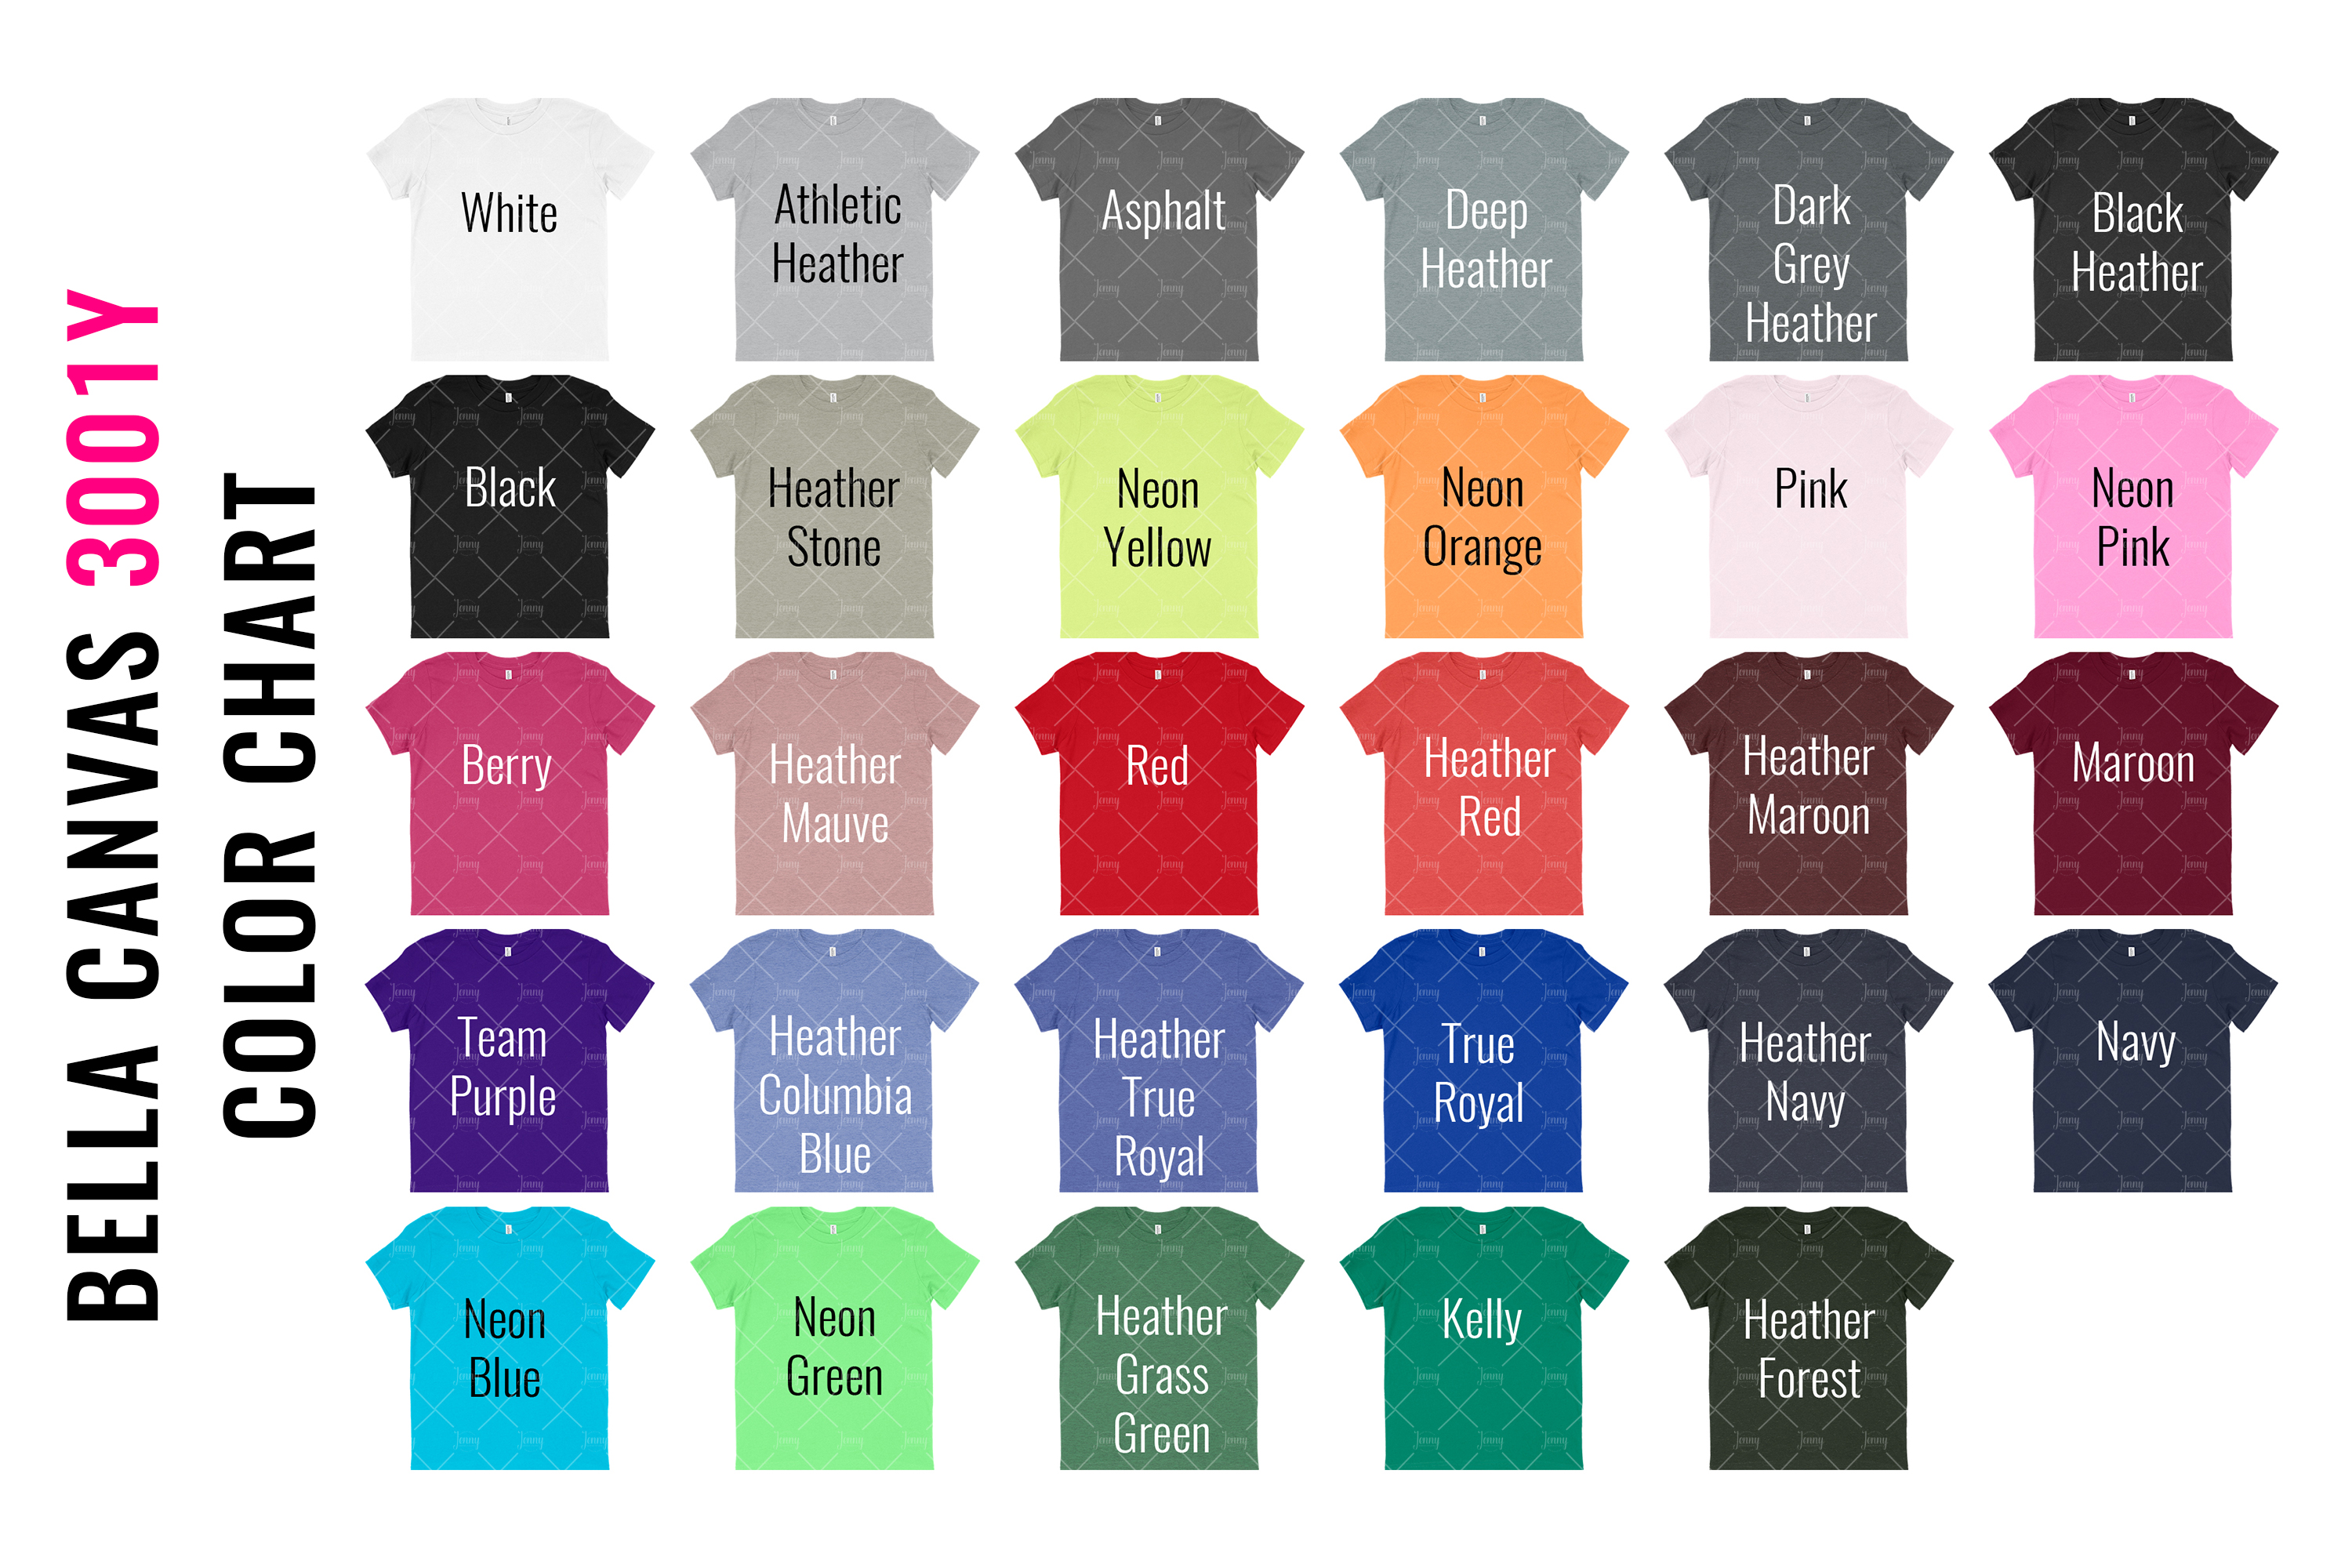 Bella Canvas Shirt Color Chart